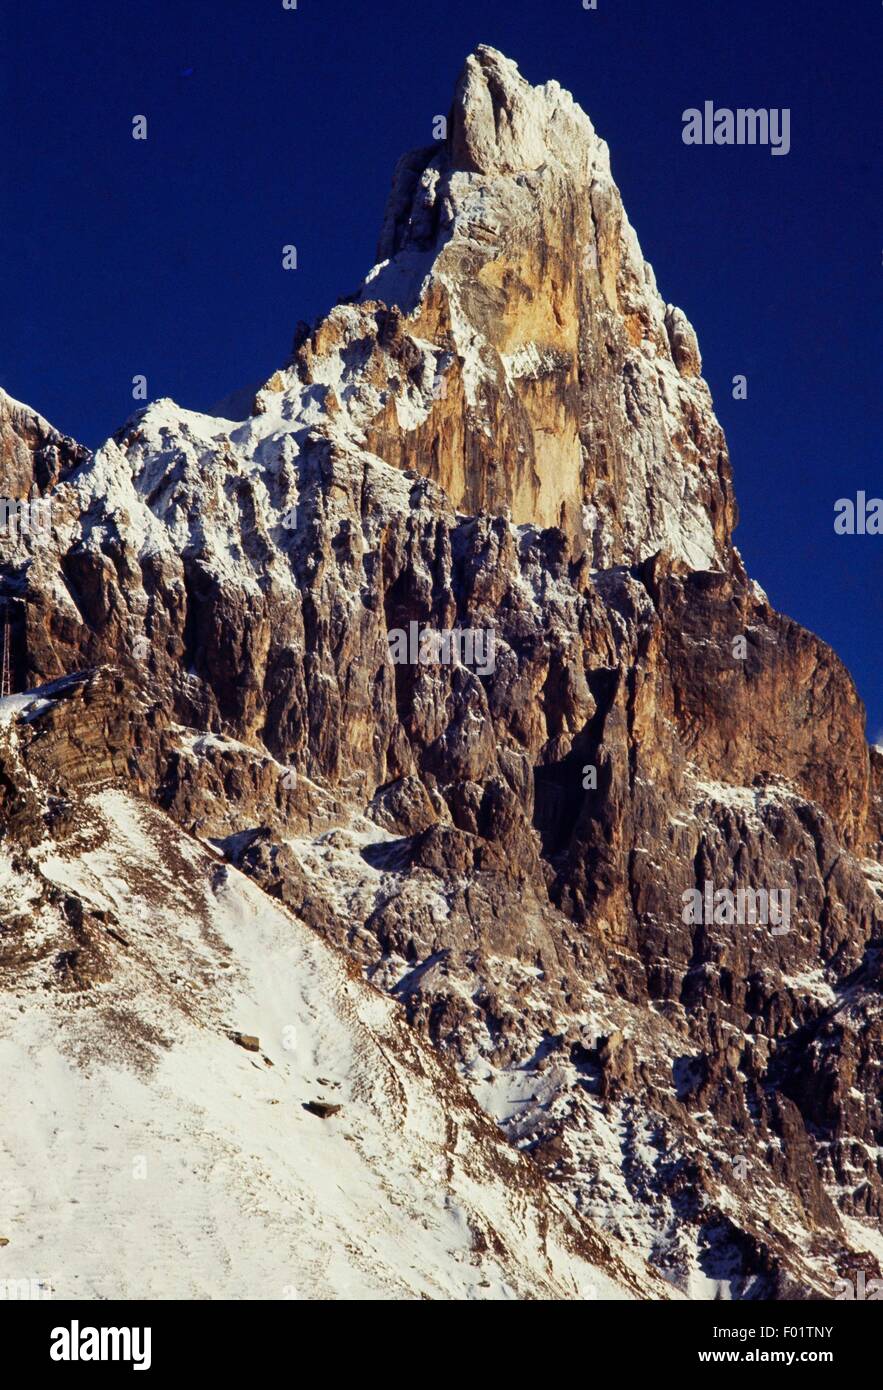 Cimon della Pala, pic de la pala group, les Dolomites (Liste du patrimoine mondial de l'UNESCO, 2009), Trentino-Alto Adige, Italie. Banque D'Images